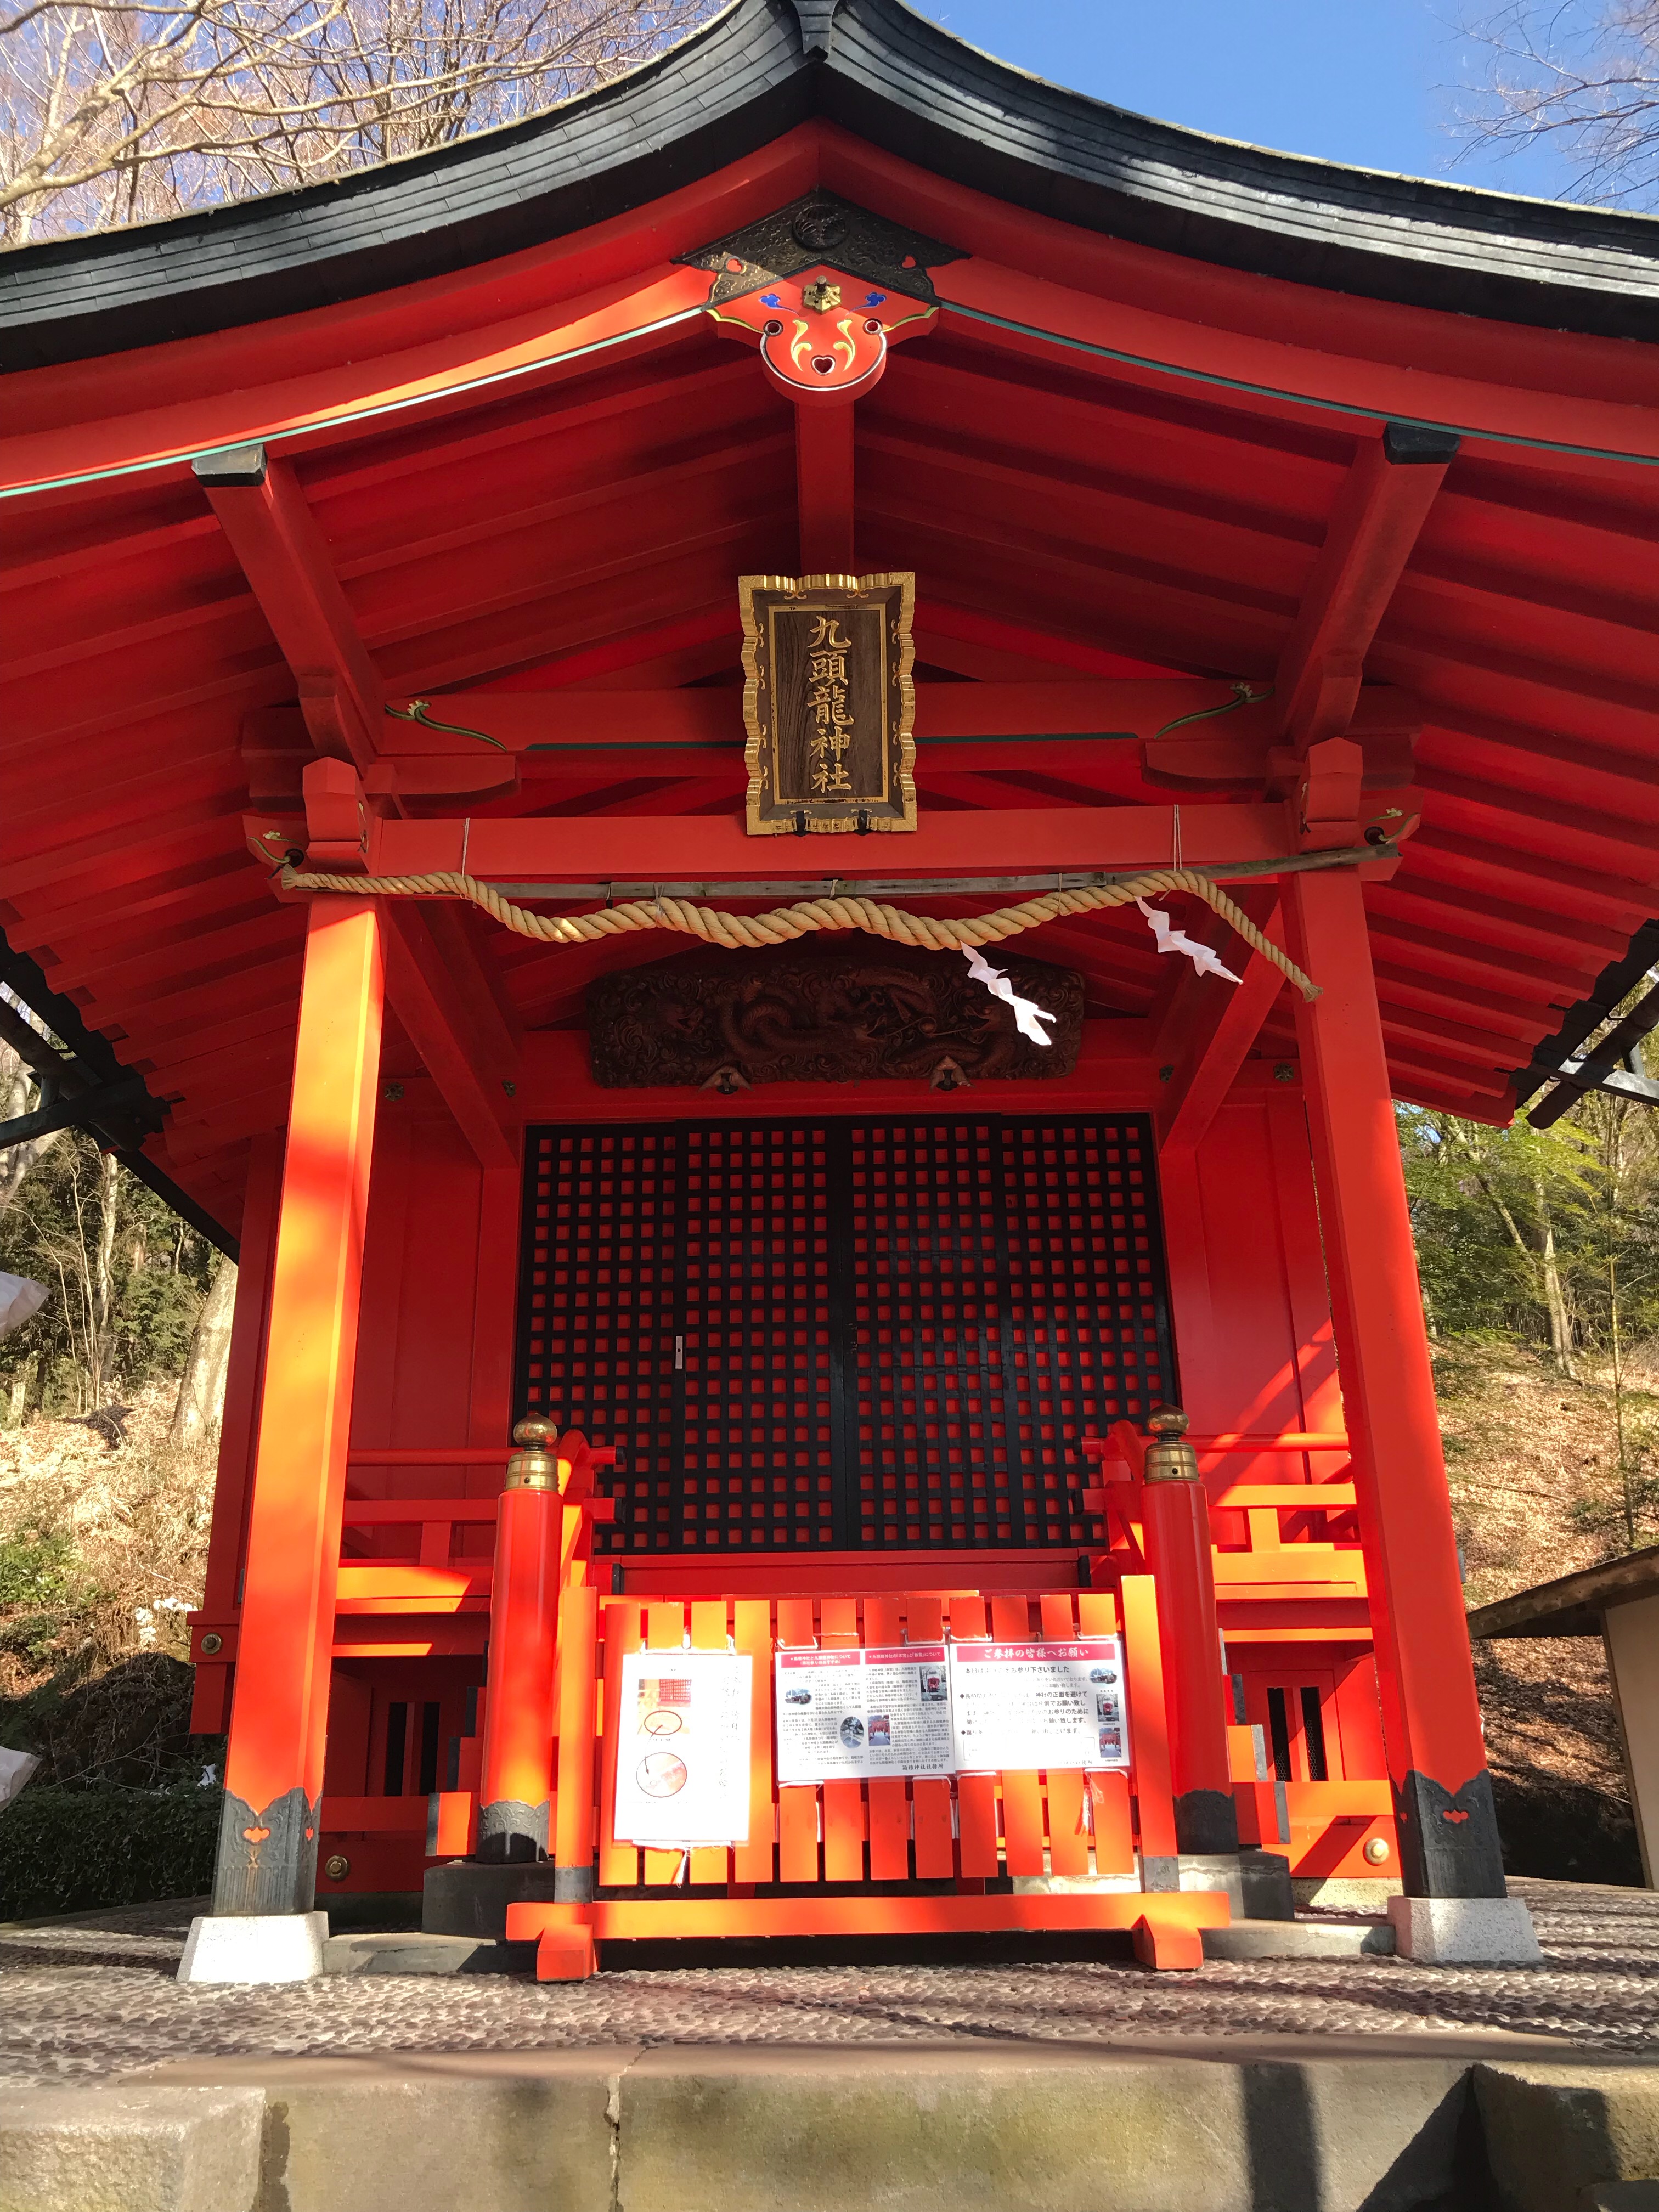 九頭龍 くずりゅう 神社 芦ノ湖の奥にひっそりと佇む 龍神信仰と縁結びの神様 行き方と特徴をお伝えします ねーさんらいふ